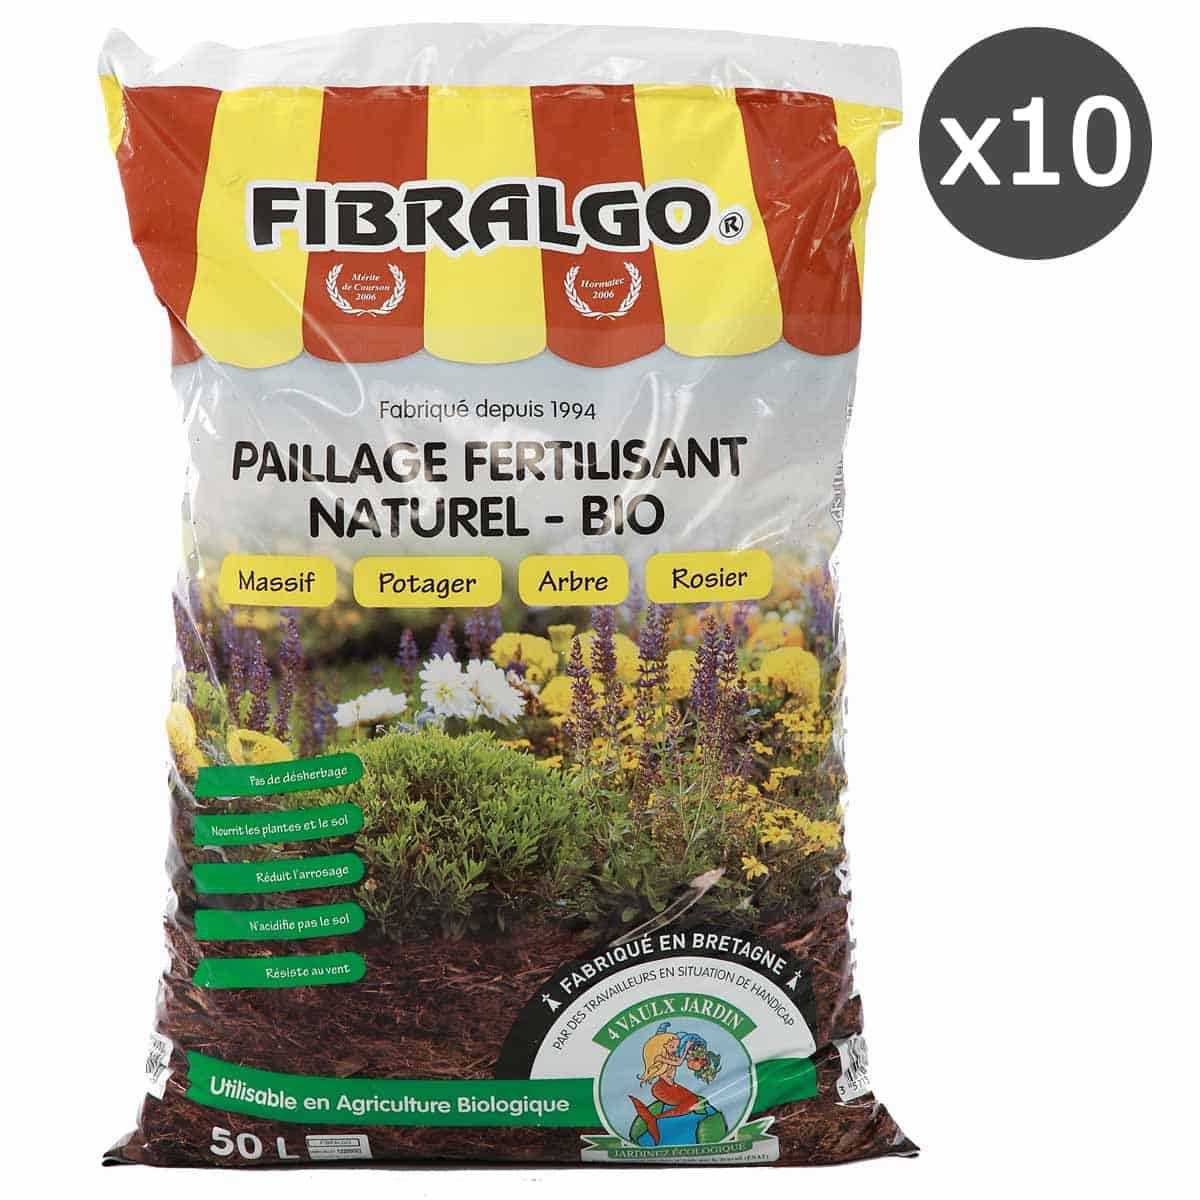 Fibralgo - Paillage fertilisant bio - lot de 10 sacs